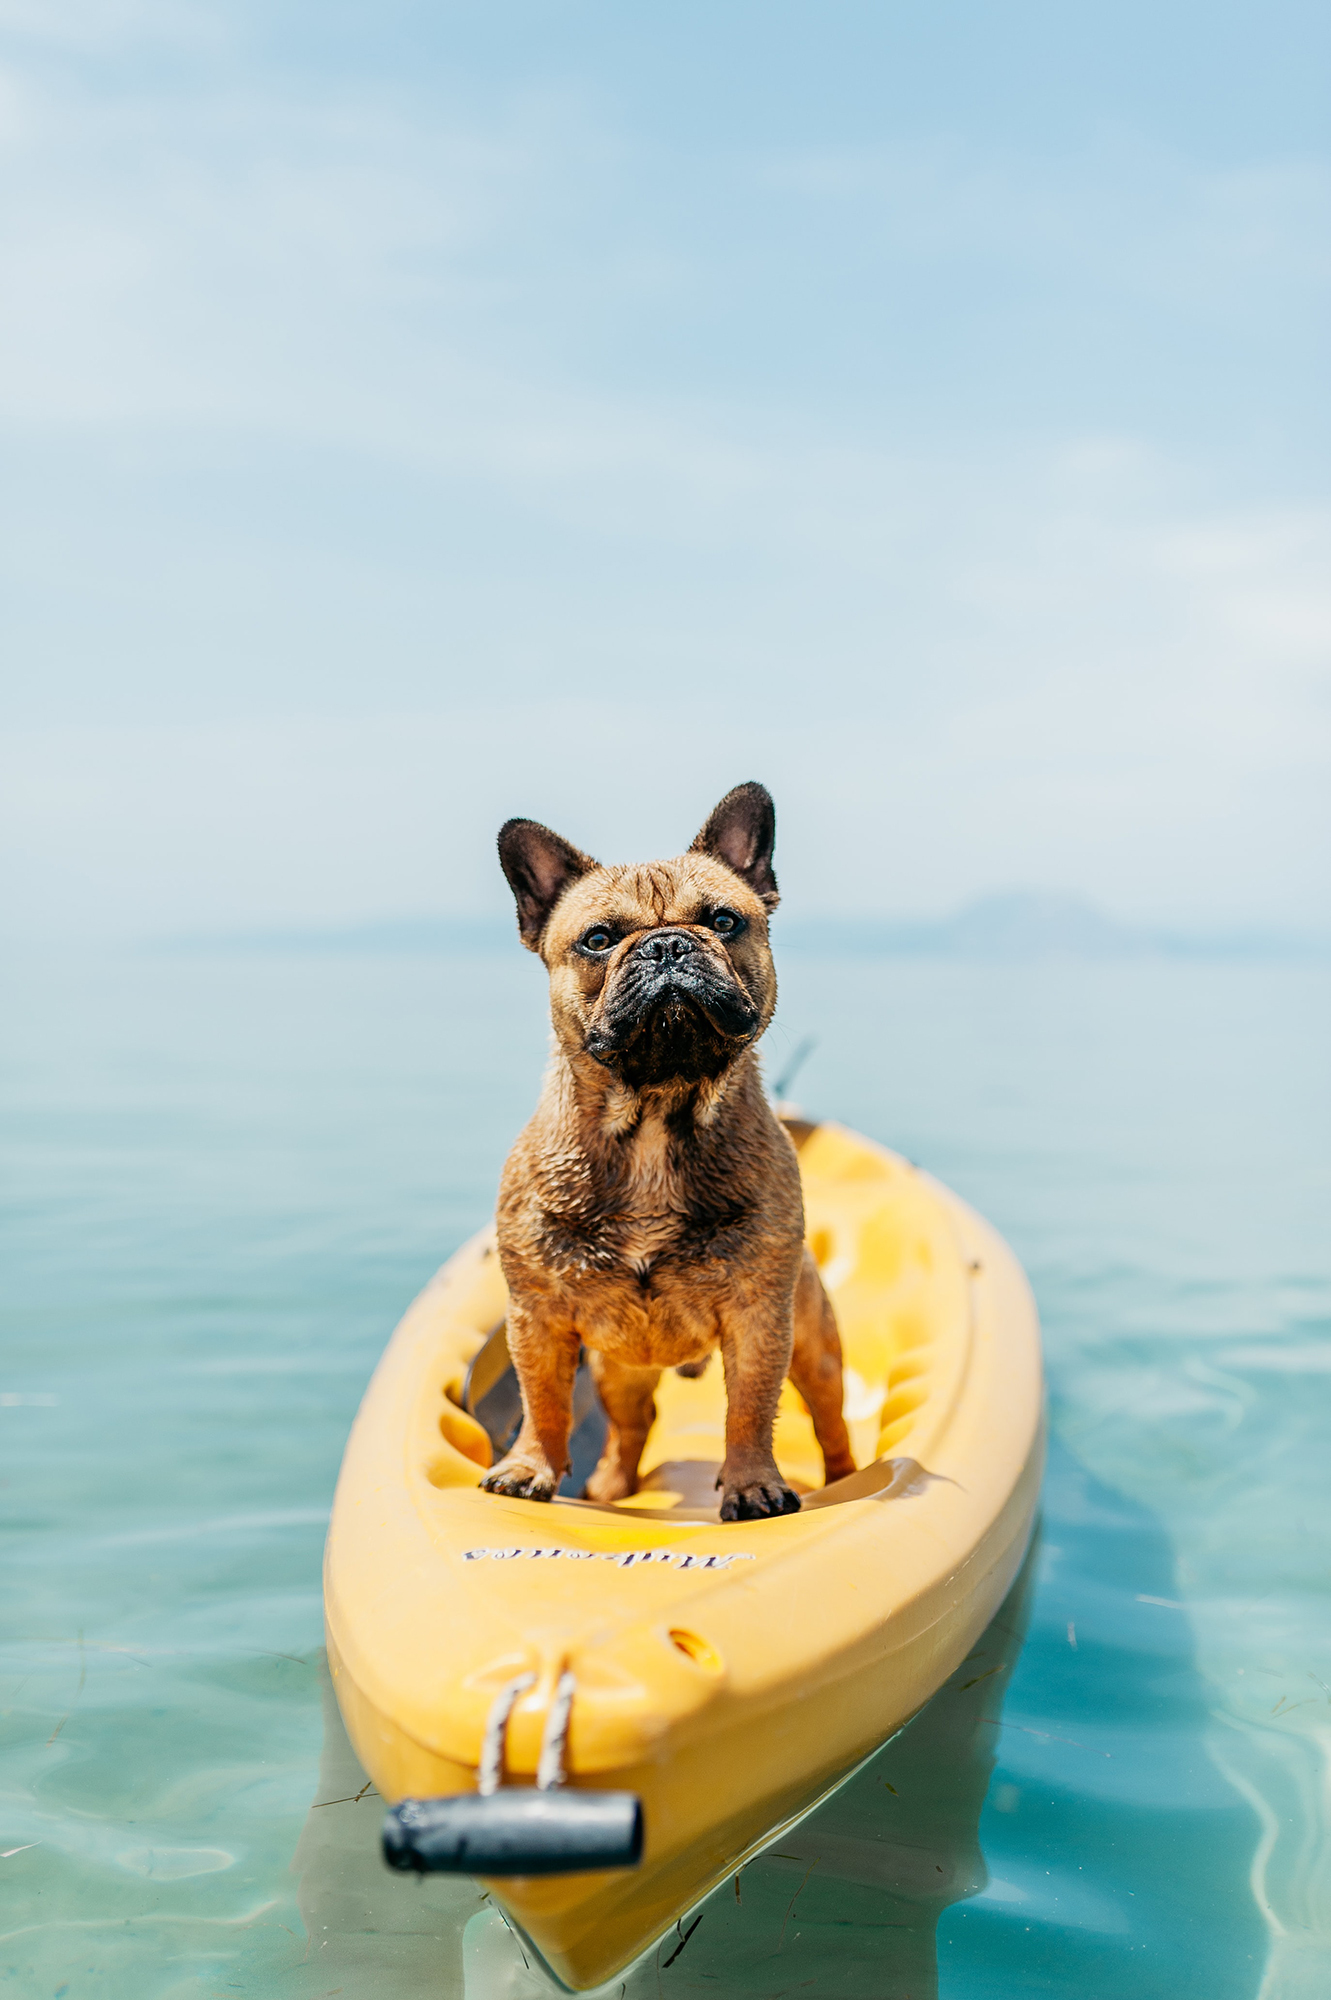 Strandolás közben is figyeljünk kutyánkra: a legmelegebb órákban kerüljük a napot, és ne engedjük felhevülten a vízbe ugrani!